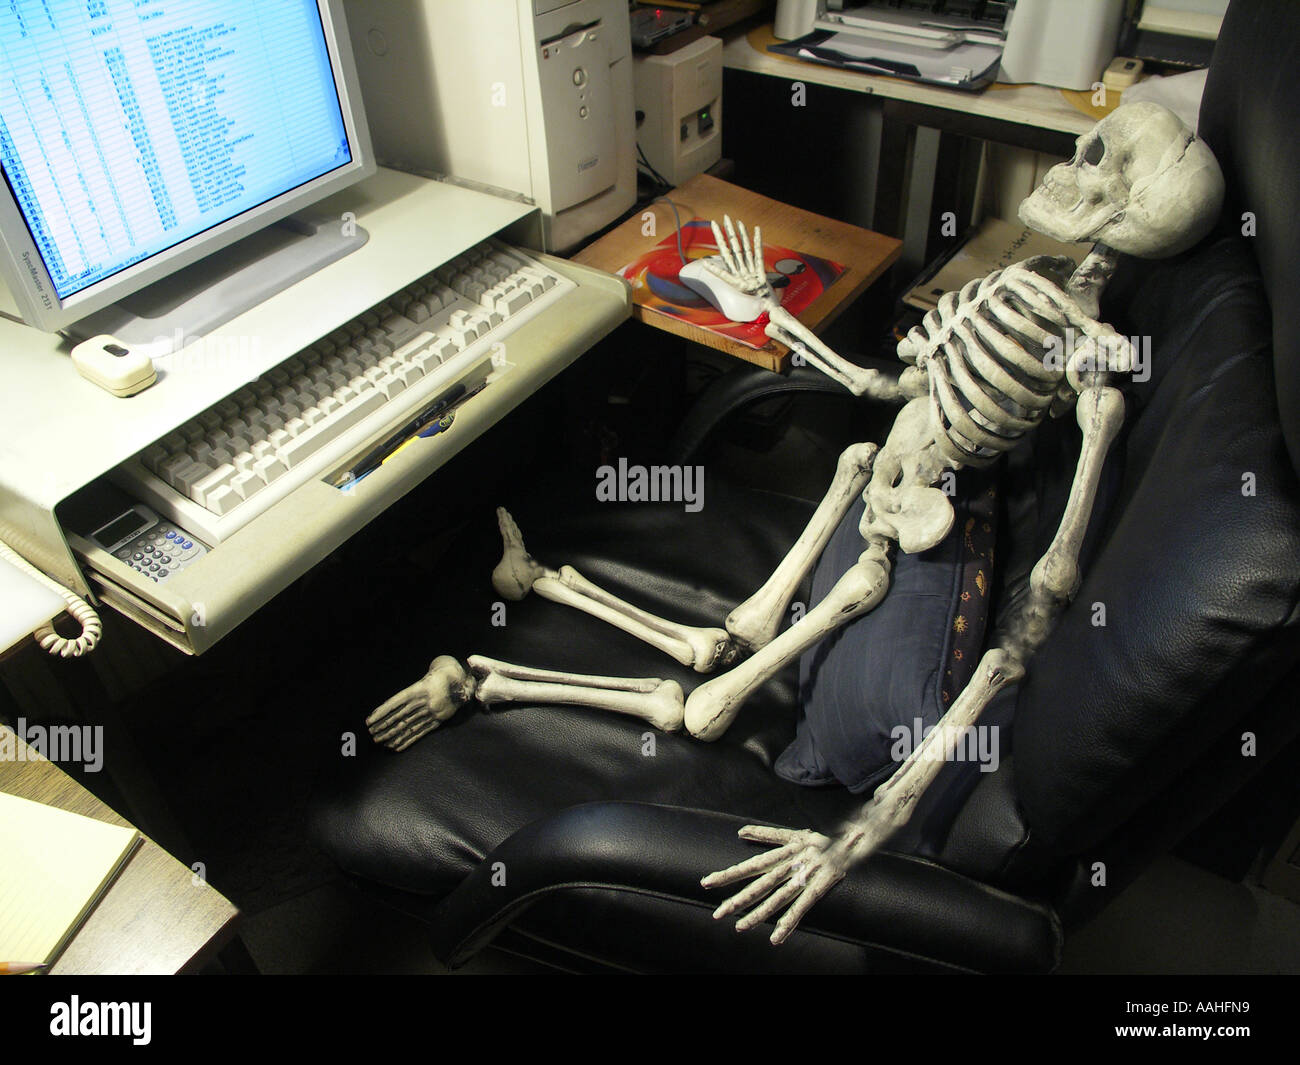 Skelett mit einem Computer Stockfotografie - Alamy